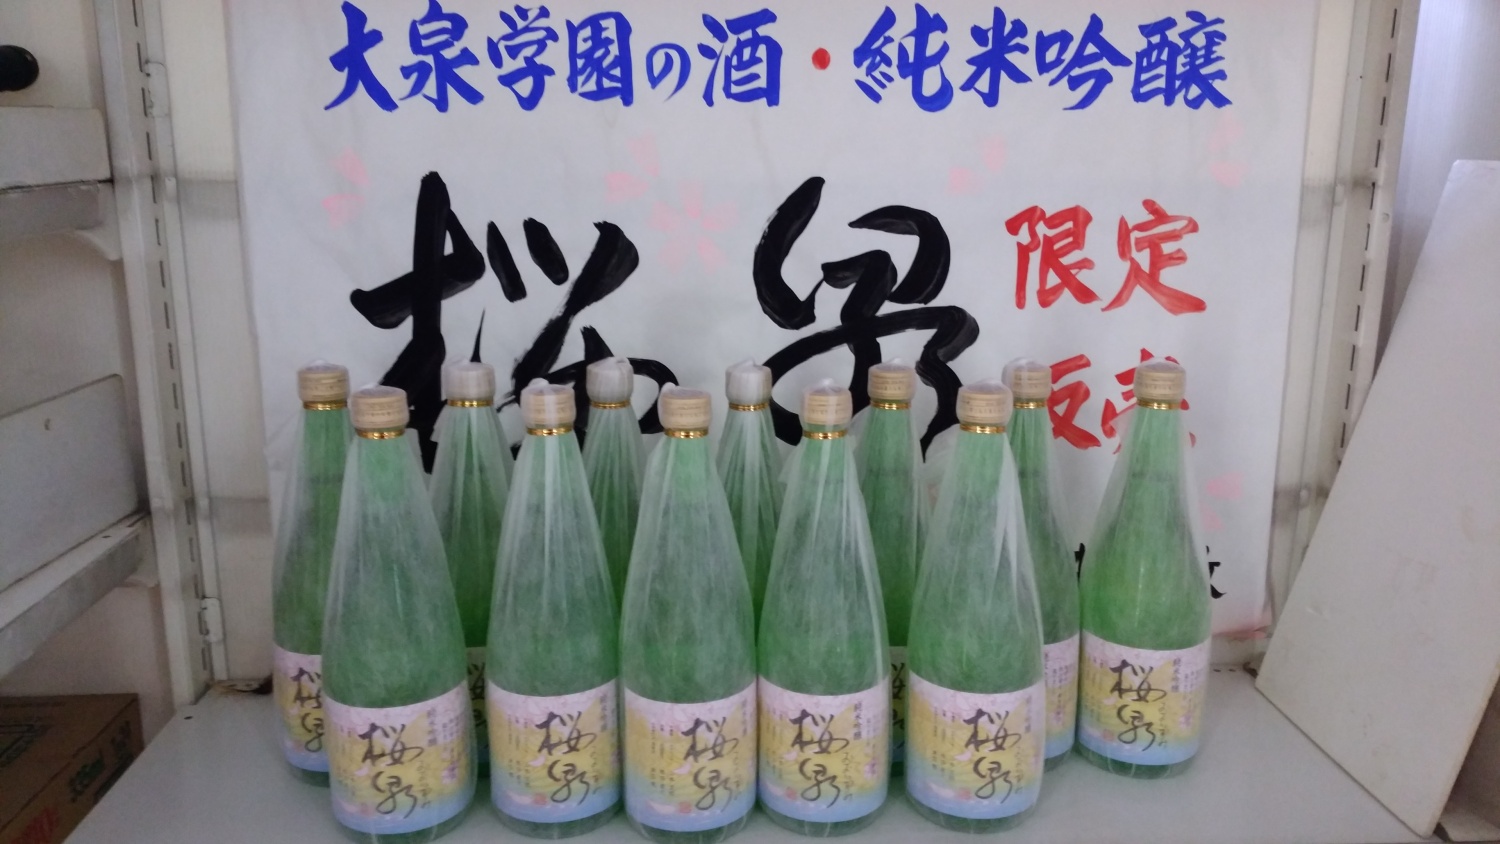 大泉学園のお酒・桜泉（おおいずみ）今年も発売されました